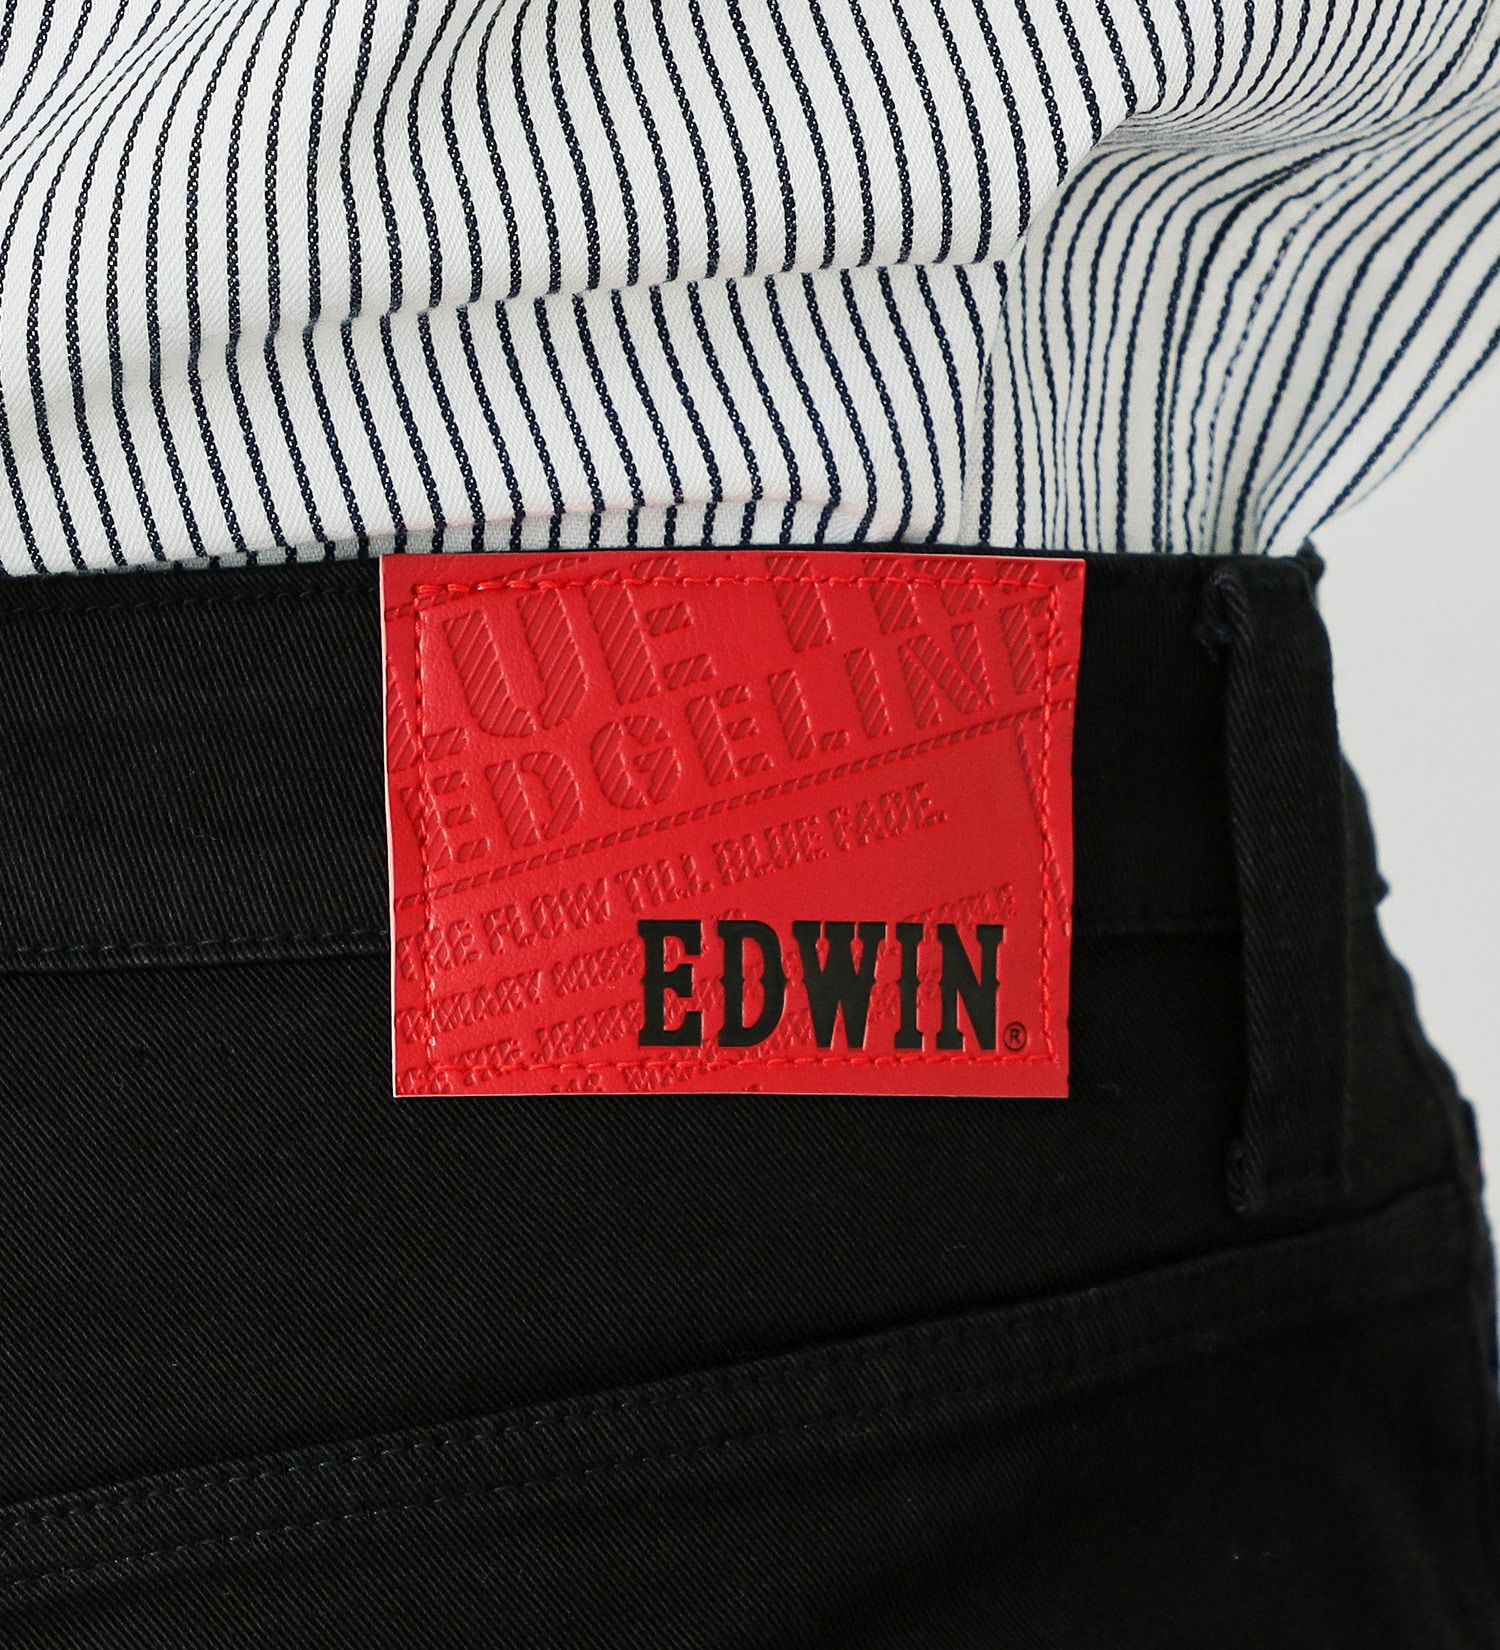 EDWIN(エドウイン)のEDGE LINE レギュラーストレートパンツ【アウトレット店舗・WEB限定】|パンツ/パンツ/メンズ|ブラック